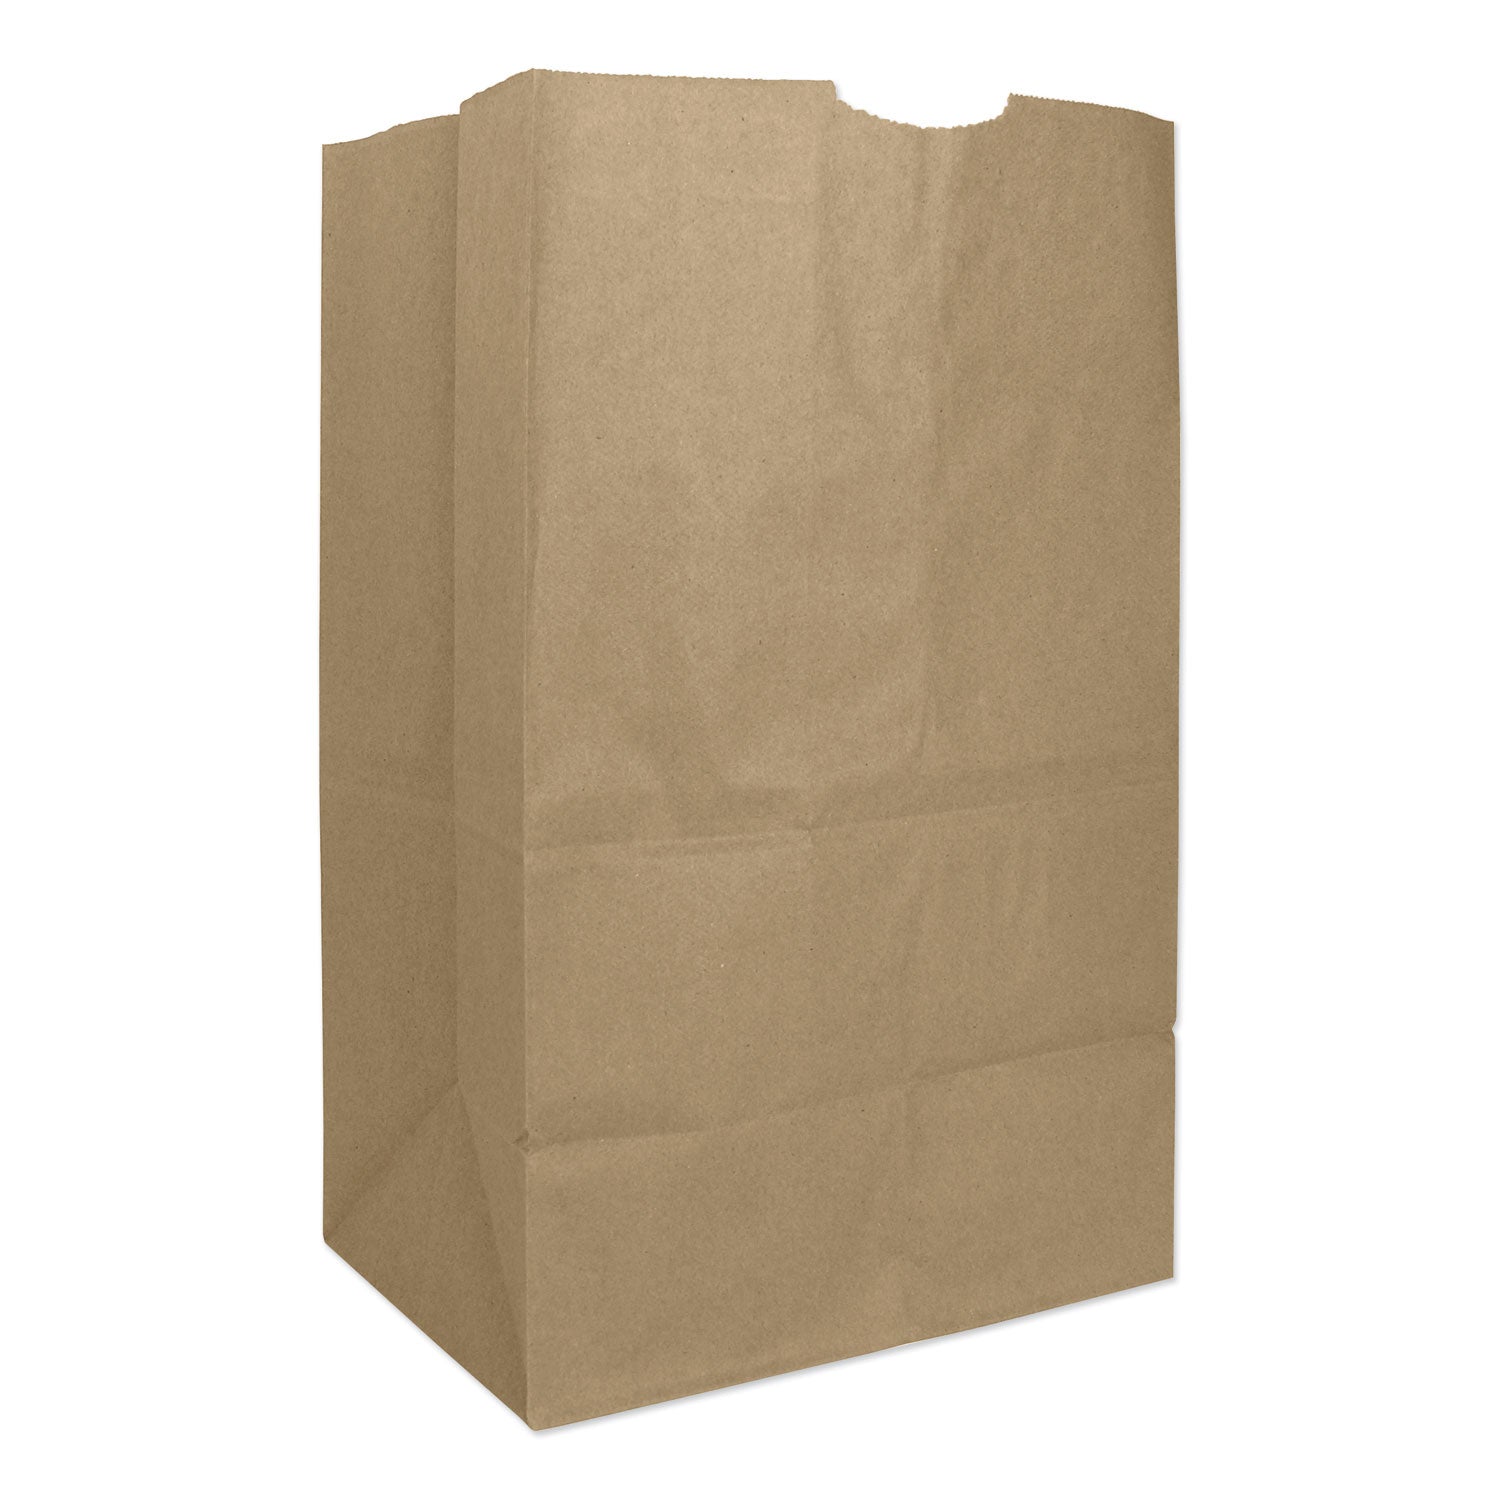 grocery-paper-bags-57-lb-capacity-#20-squat-825-x-594-x-1338-kraft-500-bags_baggx2060s - 1